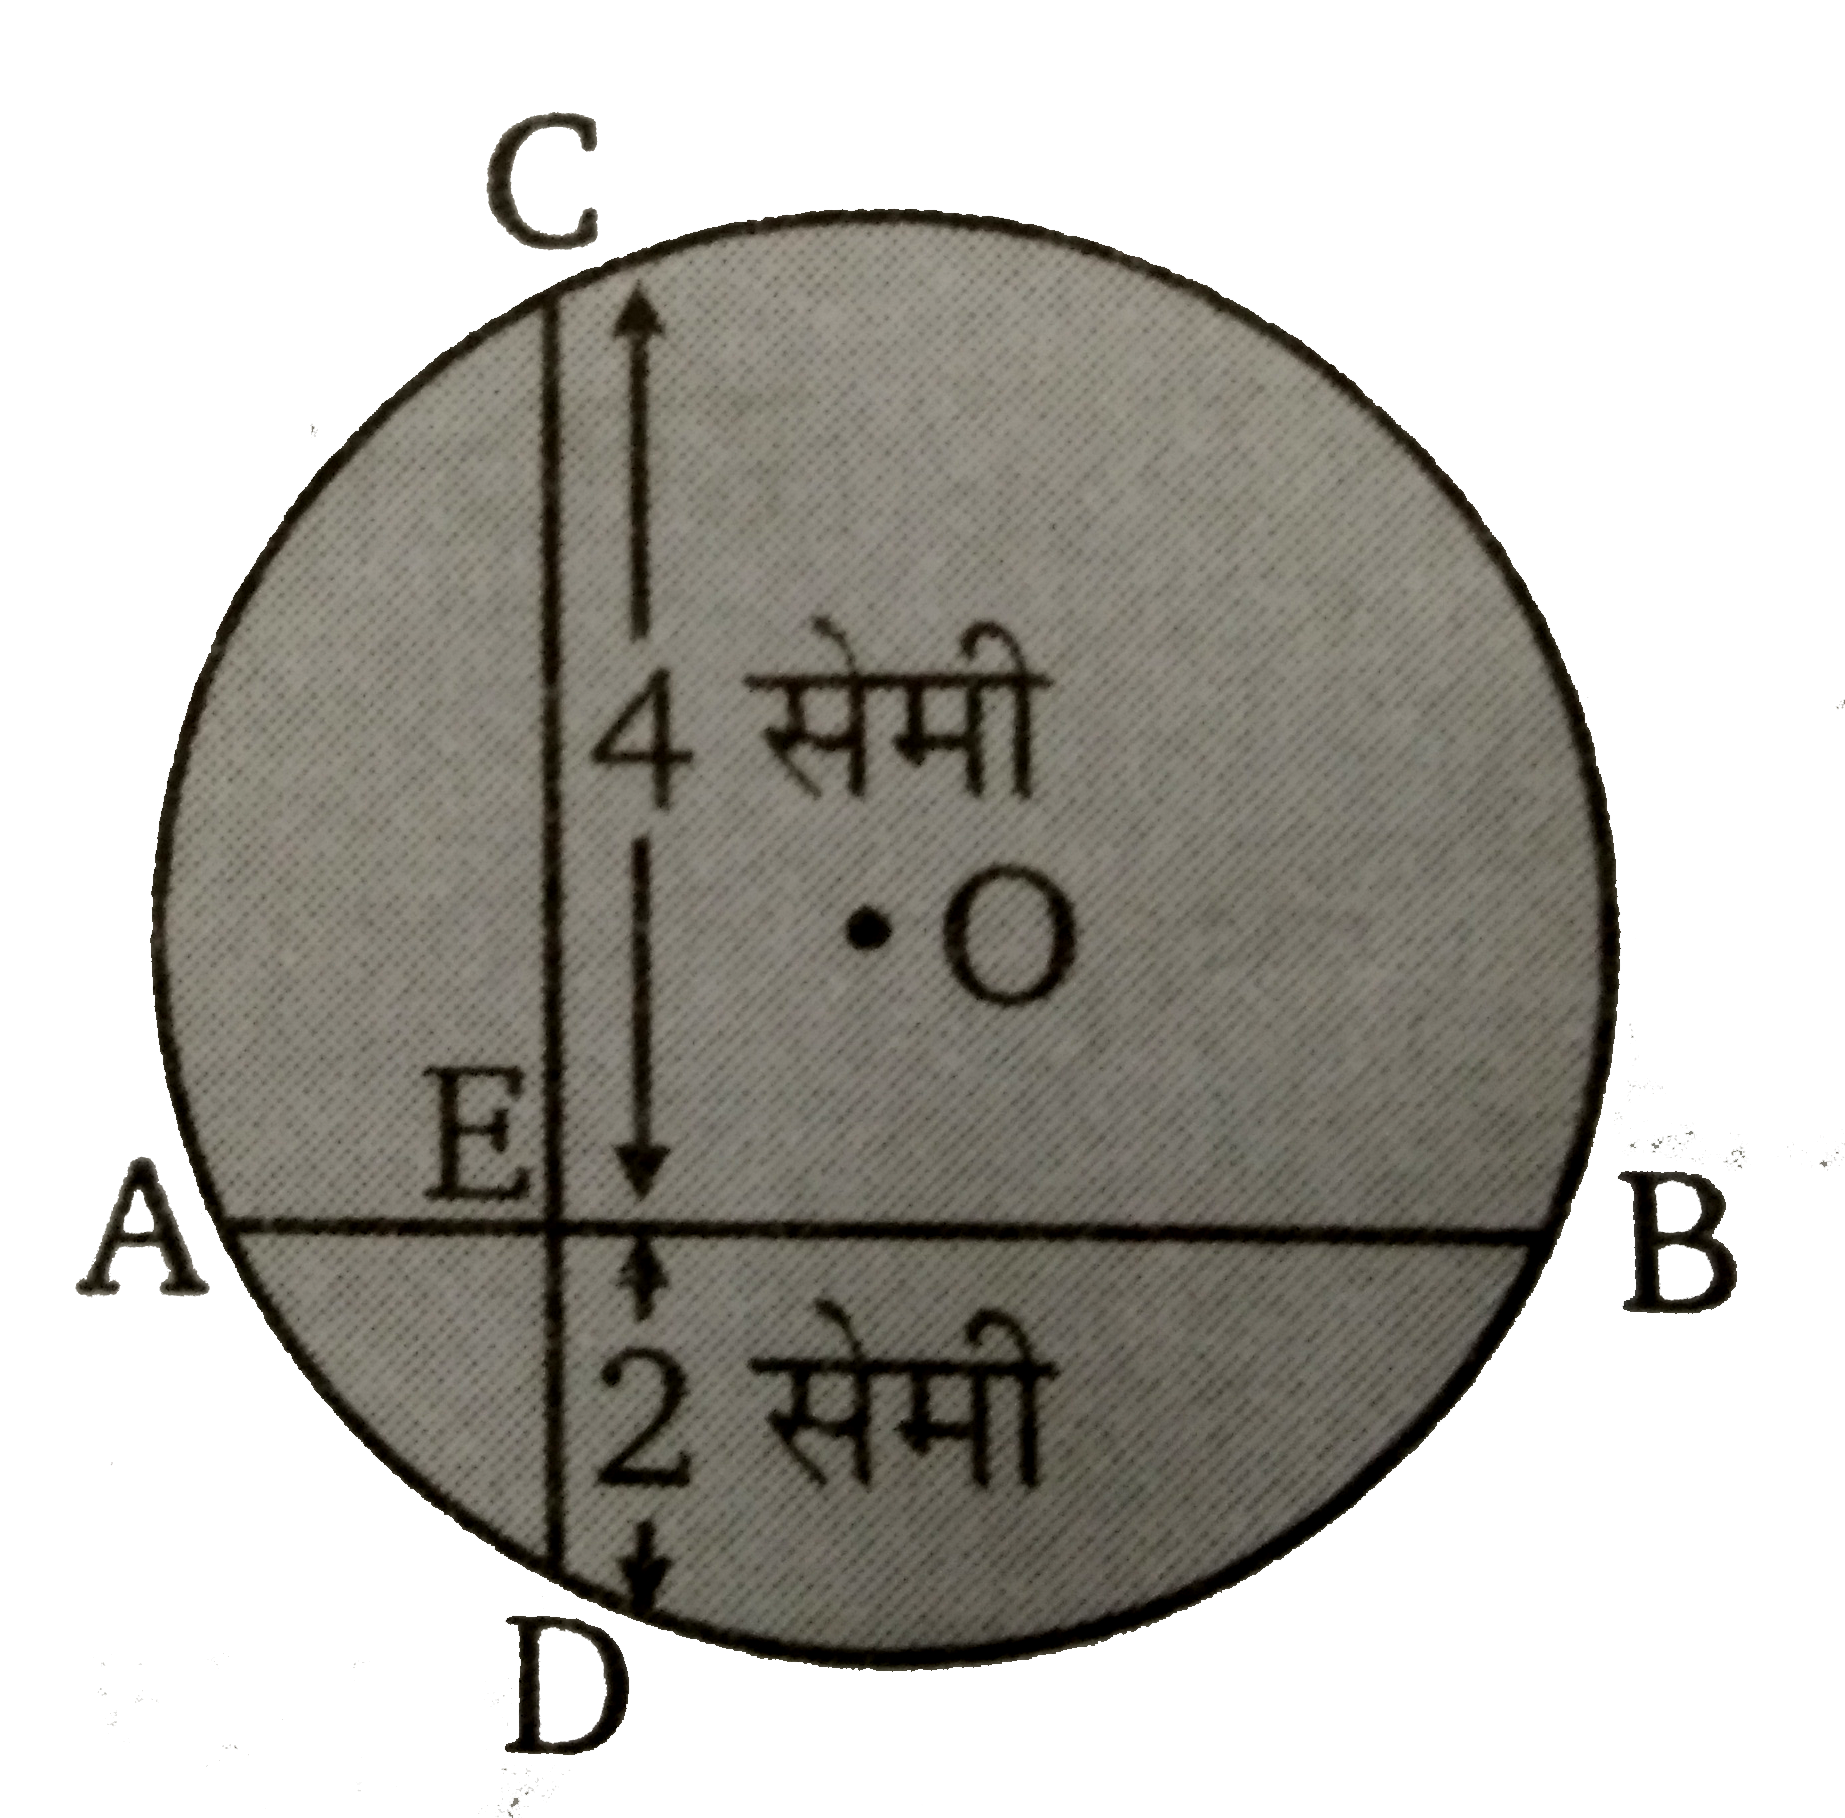 चित्र में, O  वृत्त का केन्द्र है। जिसकी दो जीवाएँ AB  व  CD परस्पर बिंदु  E पर प्रतिच्छेद करती है। यदि  CE = 4 सेमी  तथा  EB = 6 सेमी है तब AE : EB  का मान ज्ञात कीजिये ।